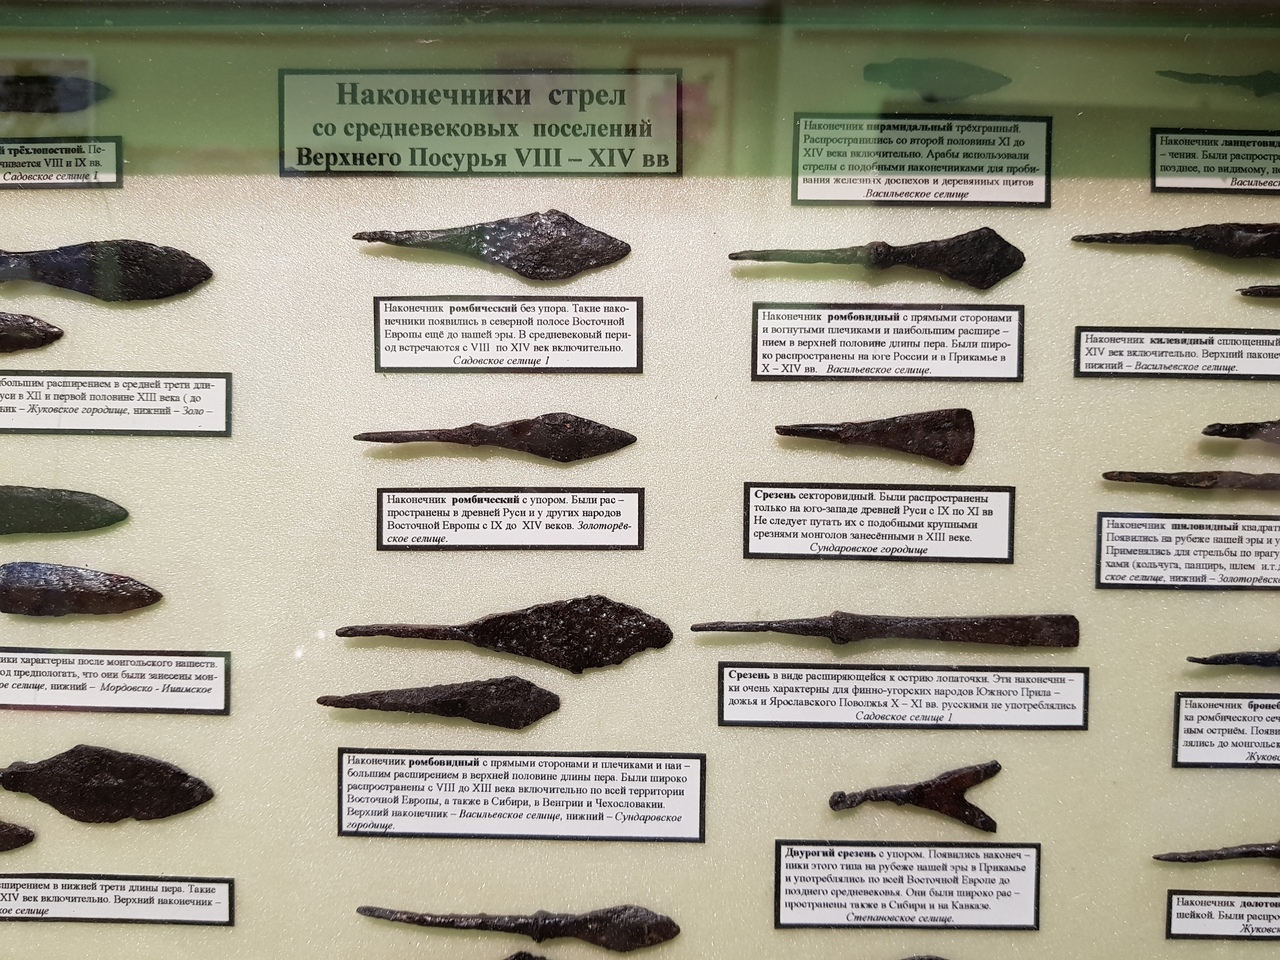 Фонды краеведческого музея пополнились редкими экспонатами